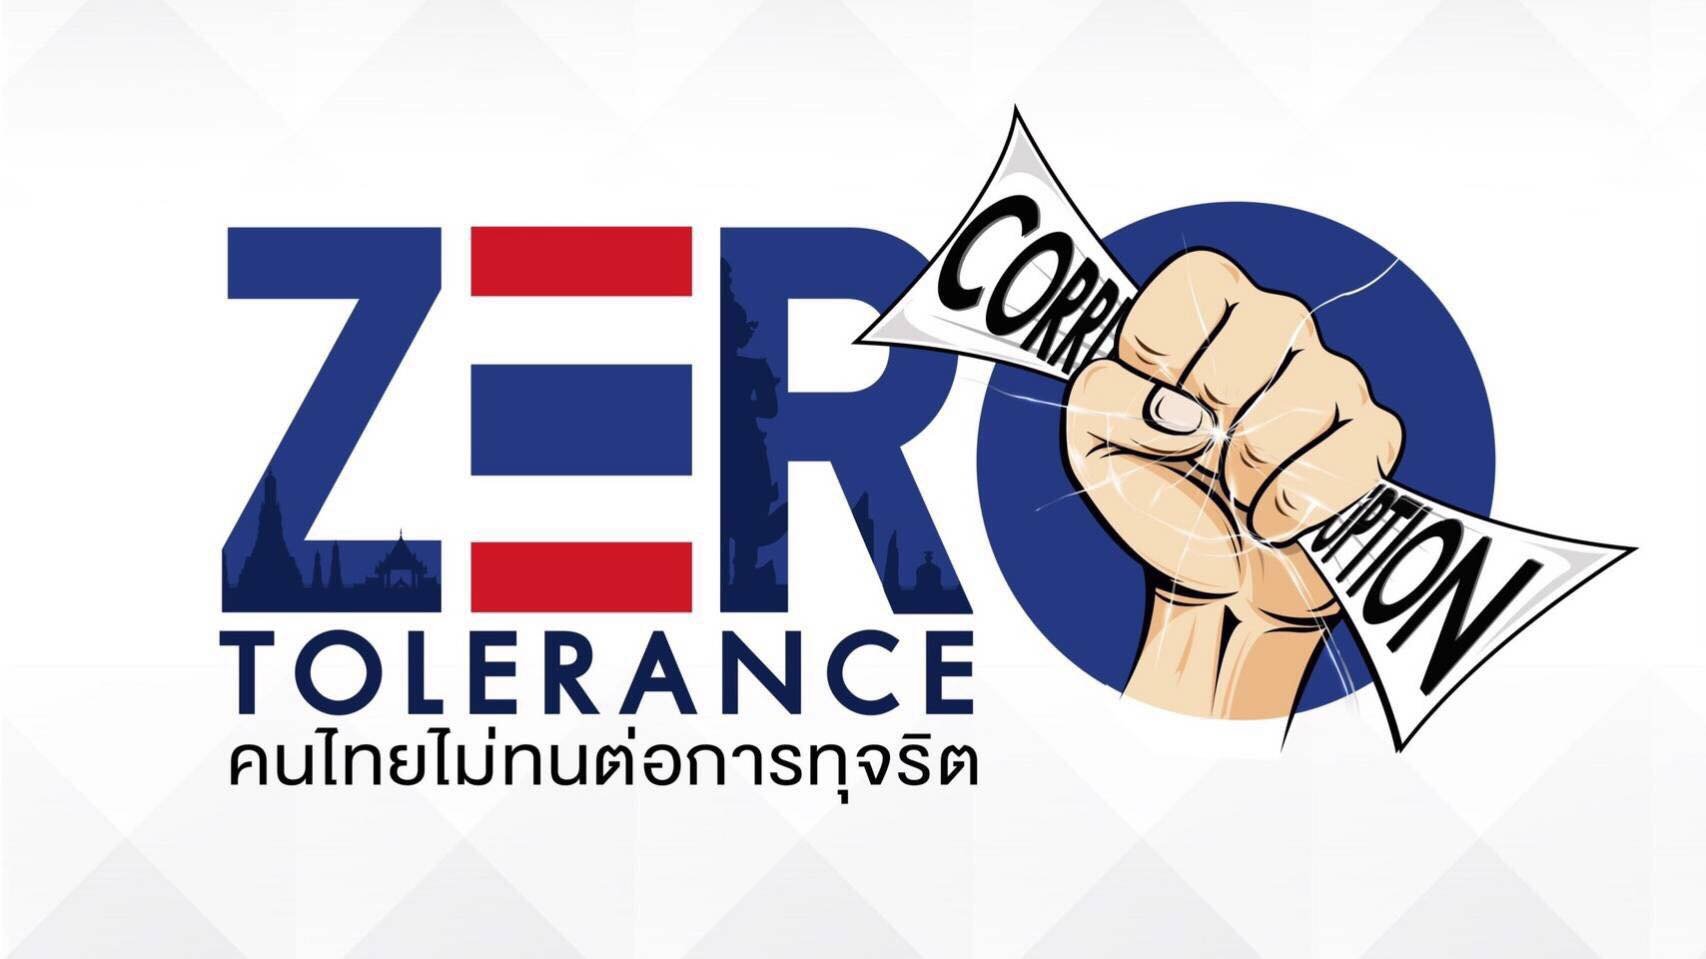 รายการ “คนไทยไม่ทนต่อการทุจริต” วันเสาร์ที่ 31 มีนาคม 2561 เวลา 18.30-1900 น.